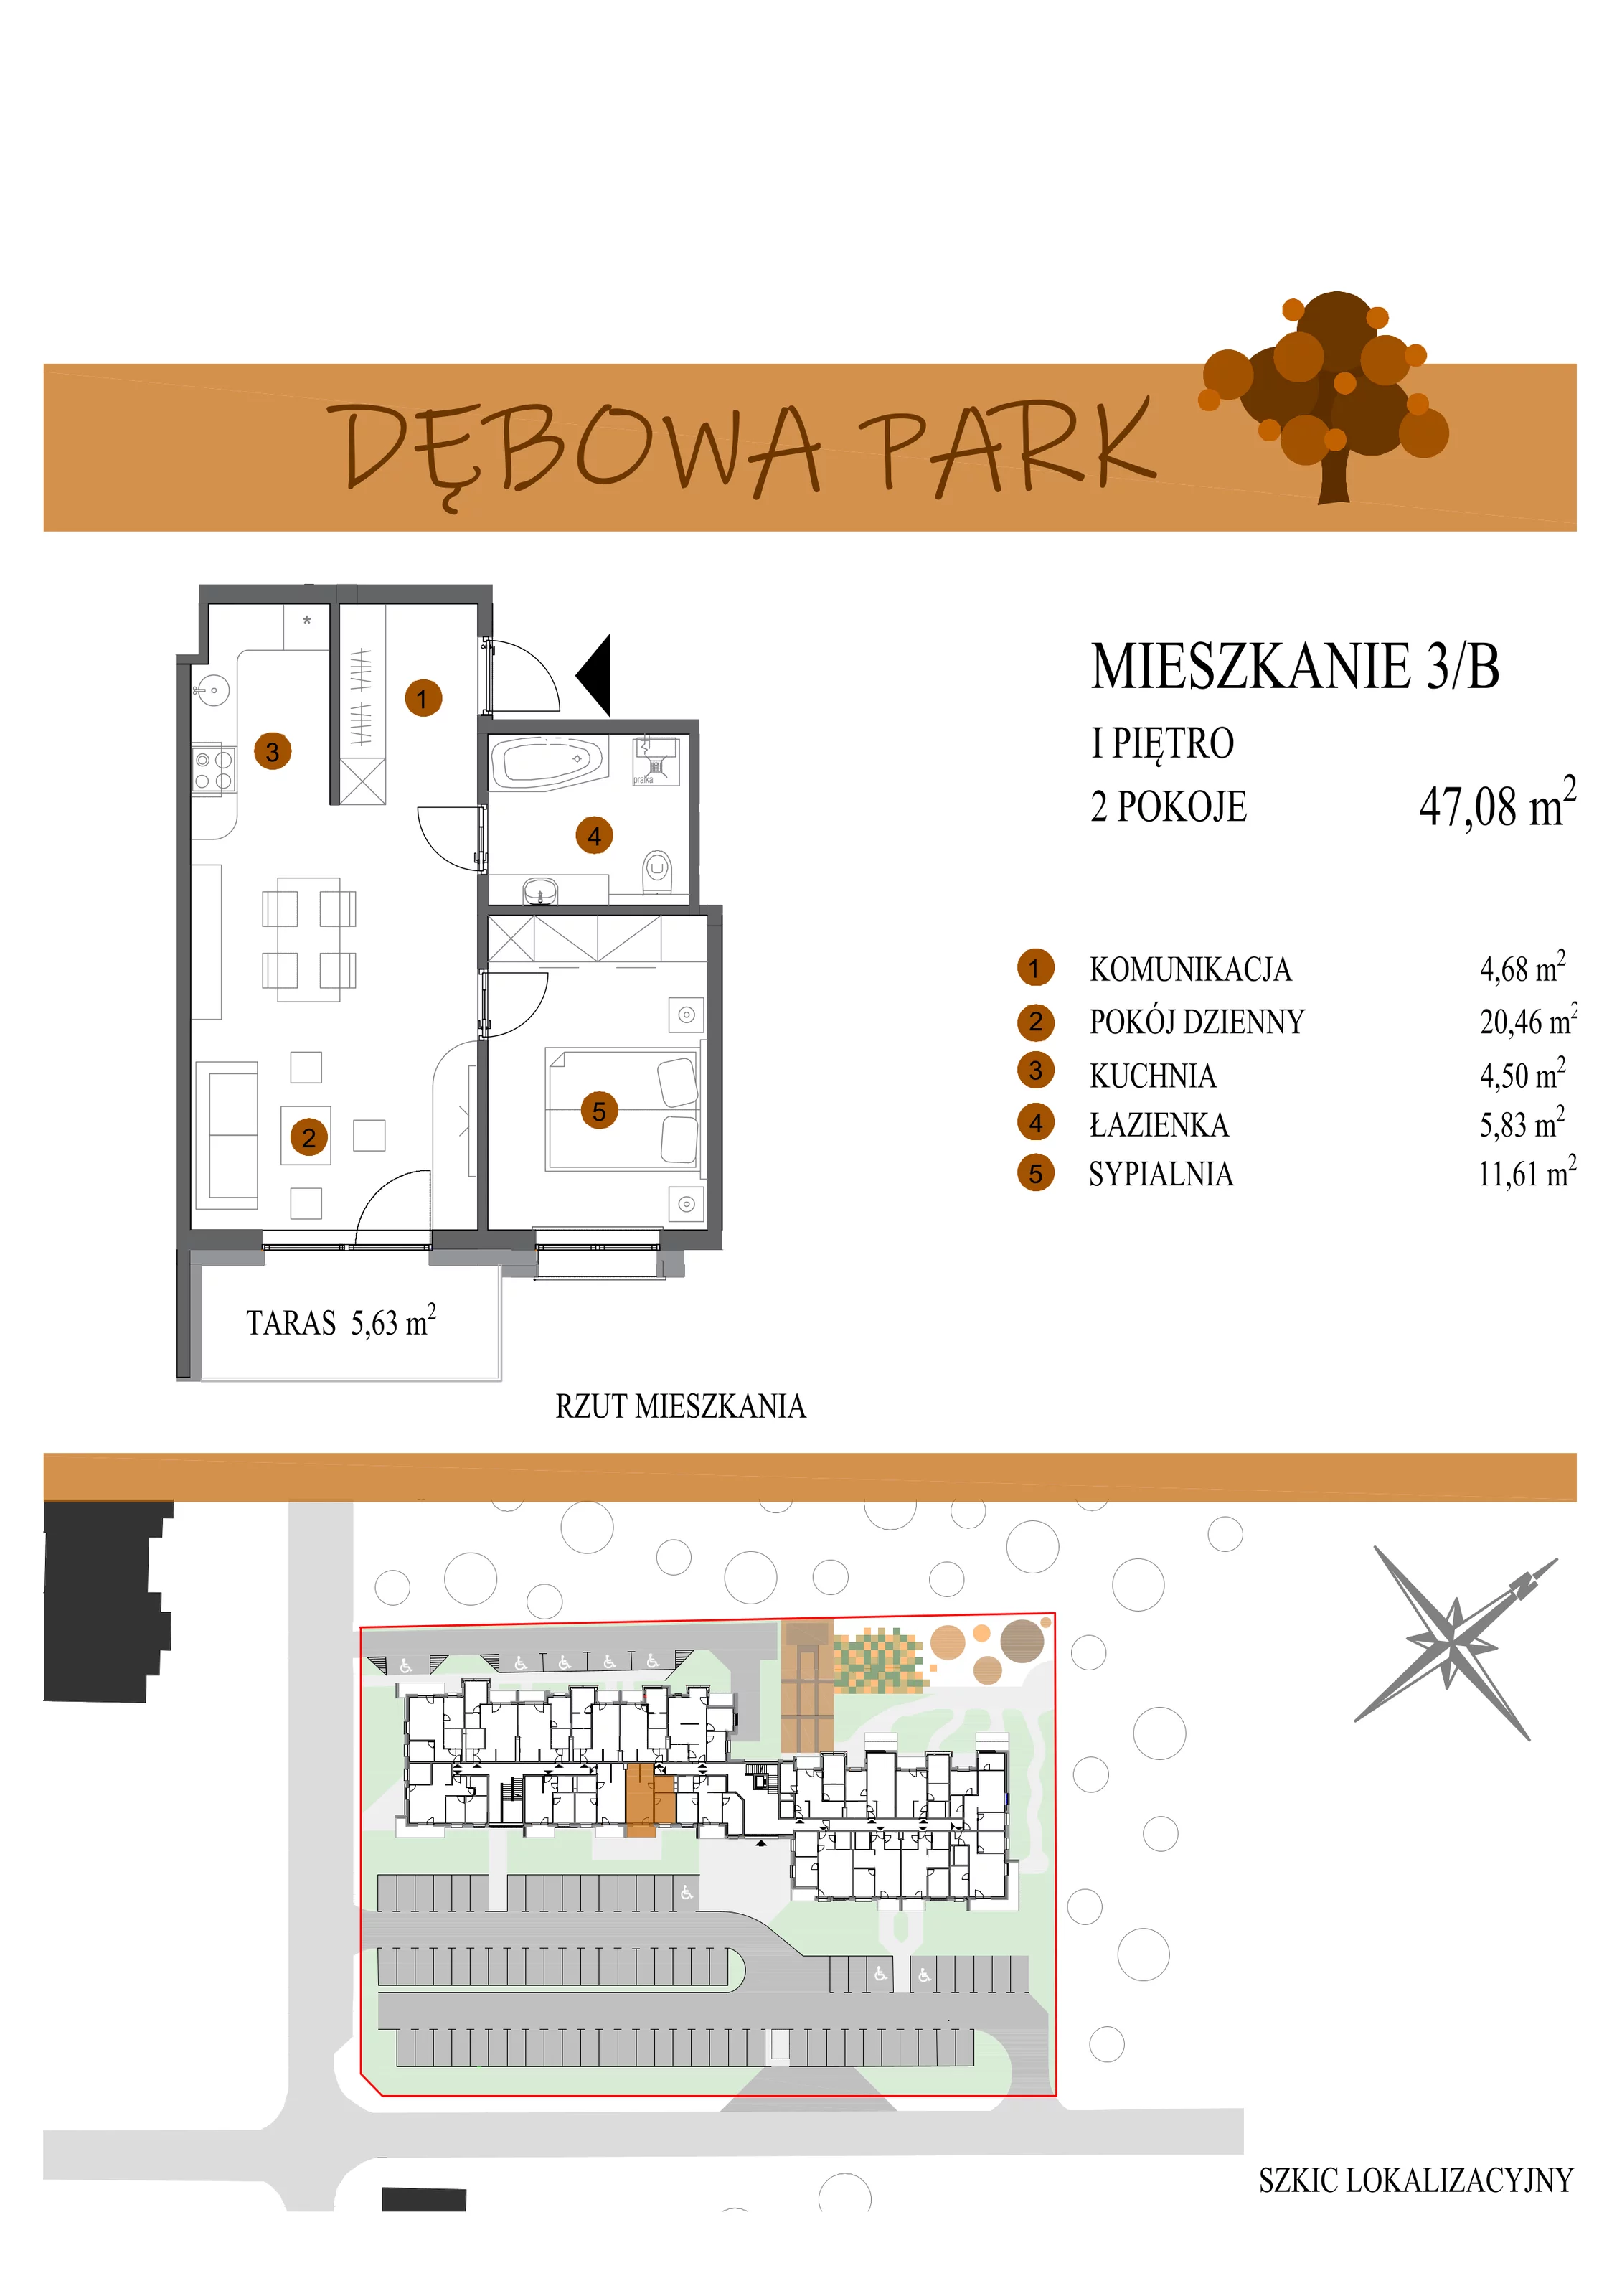 Mieszkanie 47,08 m², piętro 1, oferta nr 3B, Dębowa Park, Gogolin, ul. Dębowa